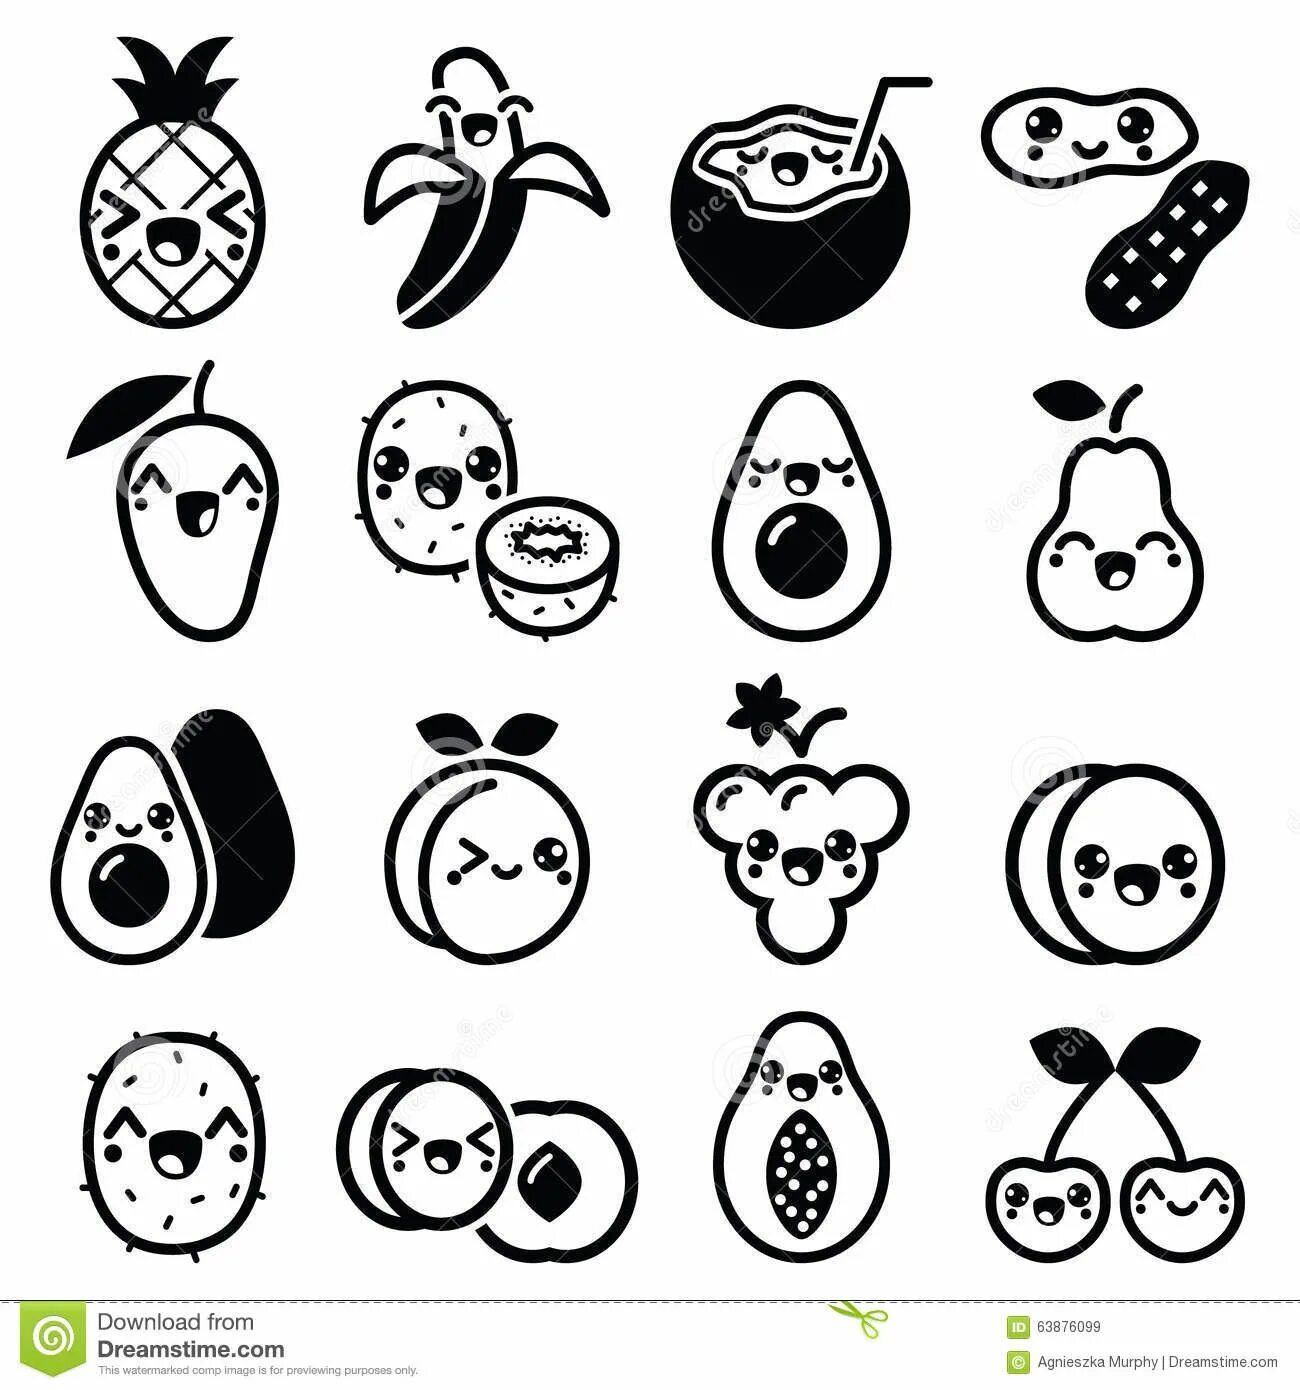 For avocado stickers #4